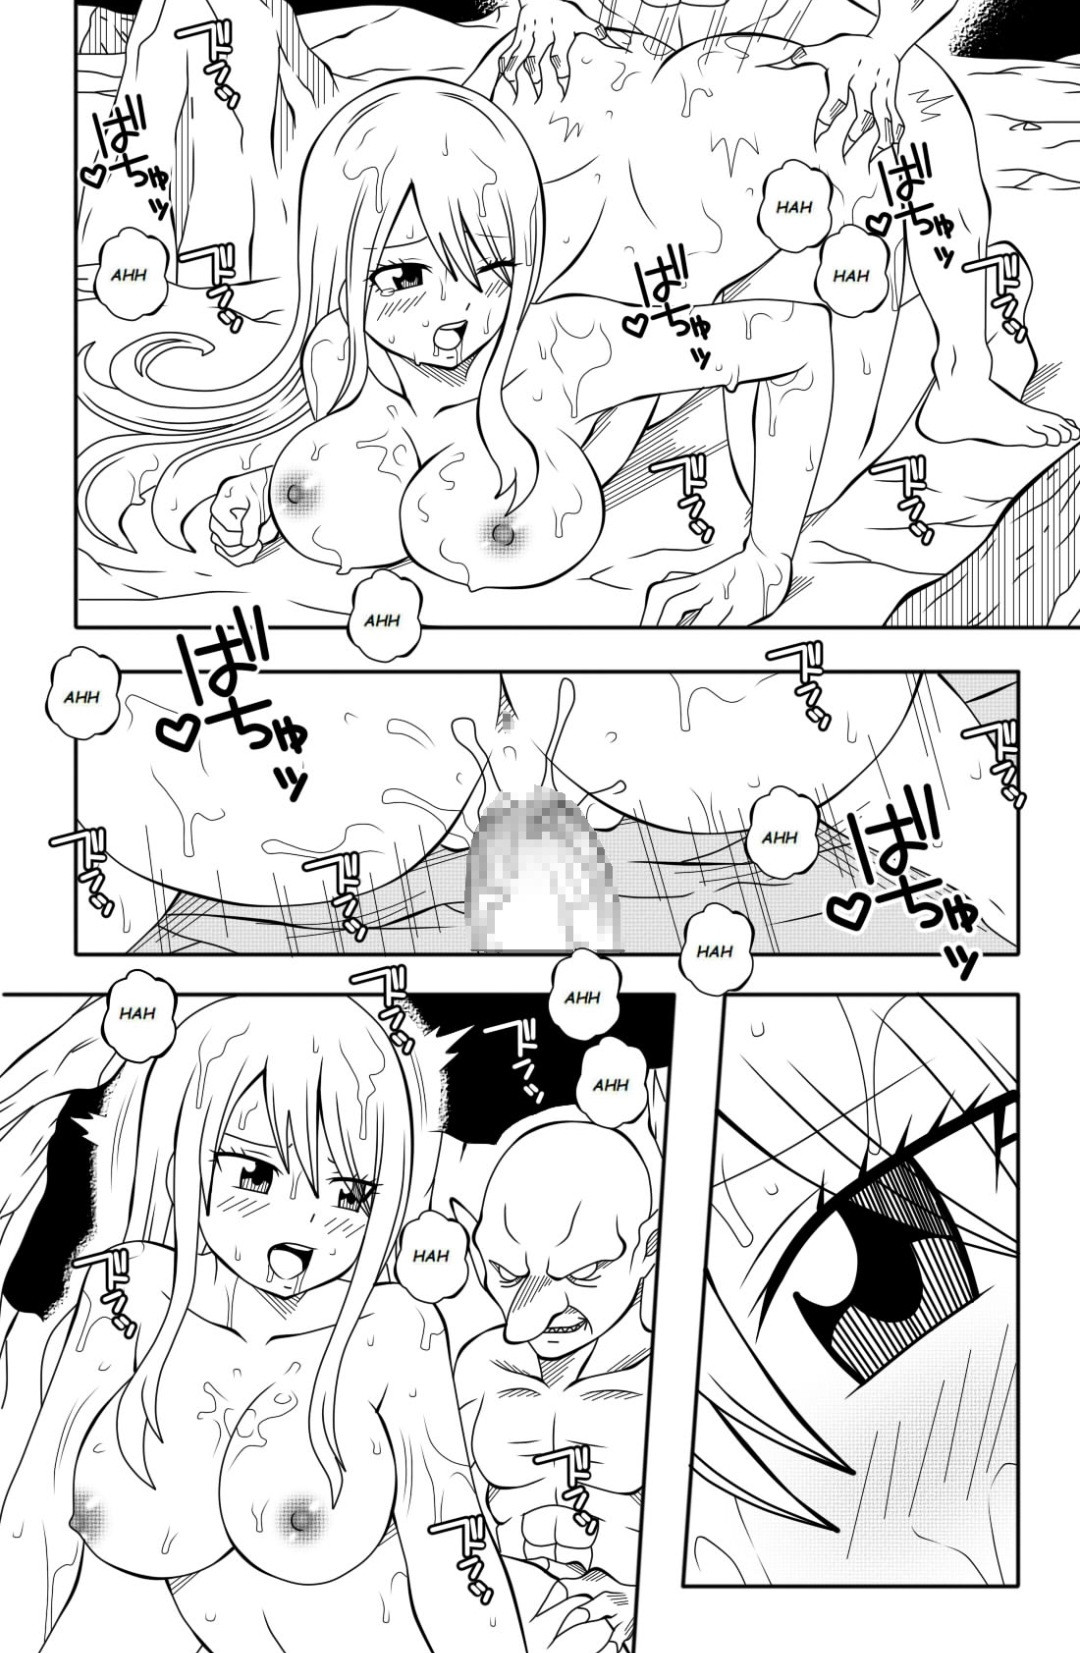 [DMAYaichi] Fairy Tail H Quest #1 - 1